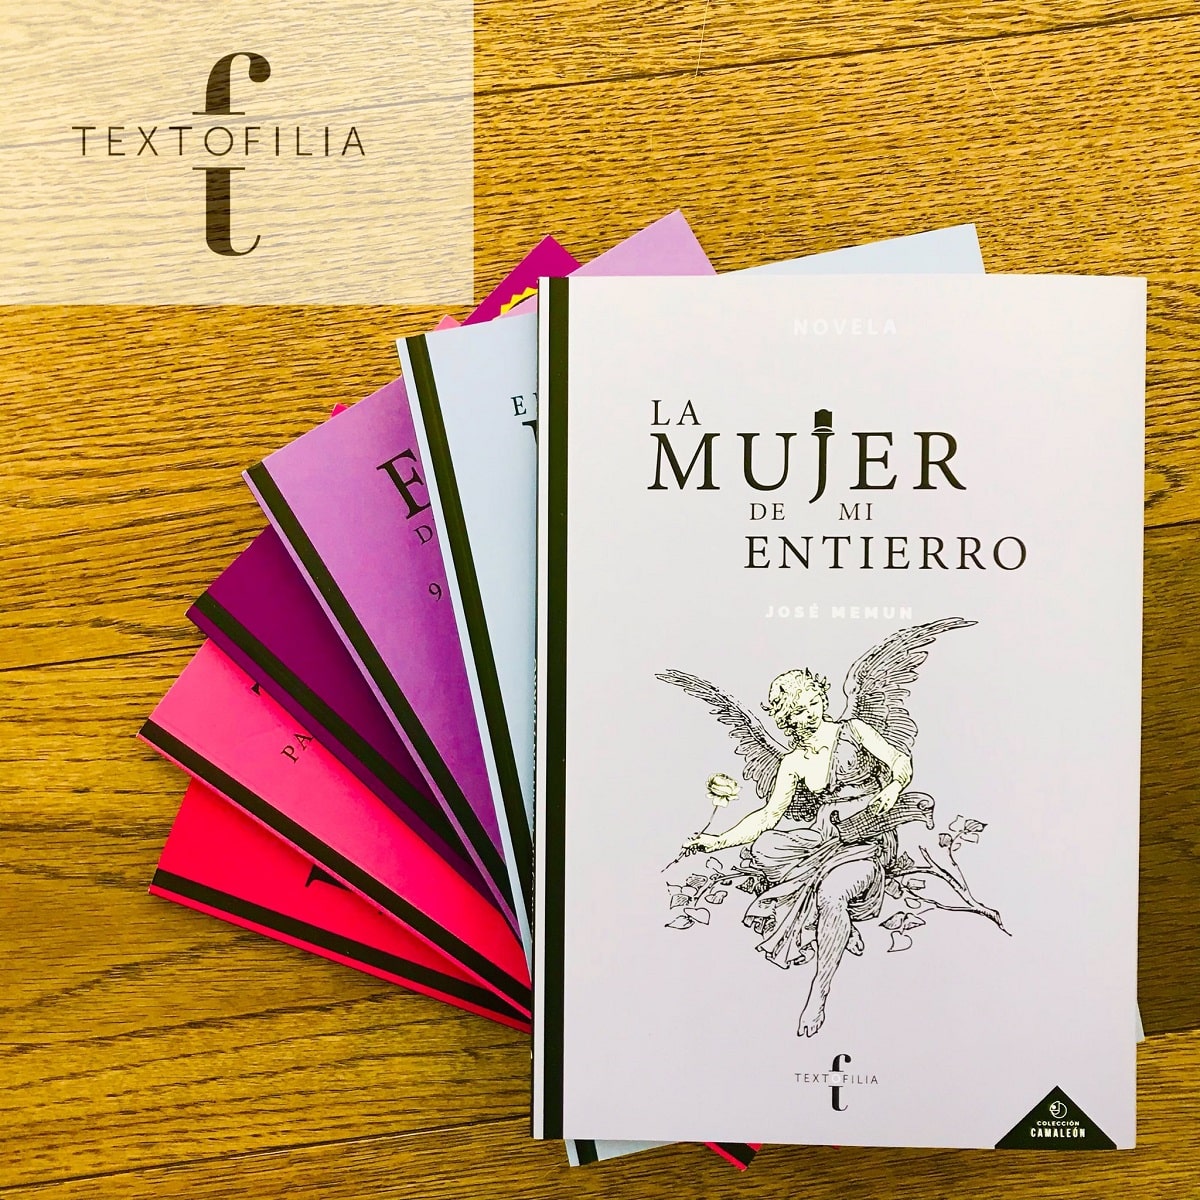 Editorial Textofilia anuncia el lanzamiento de la nueva novela de José Memun, La mujer de mi entierro